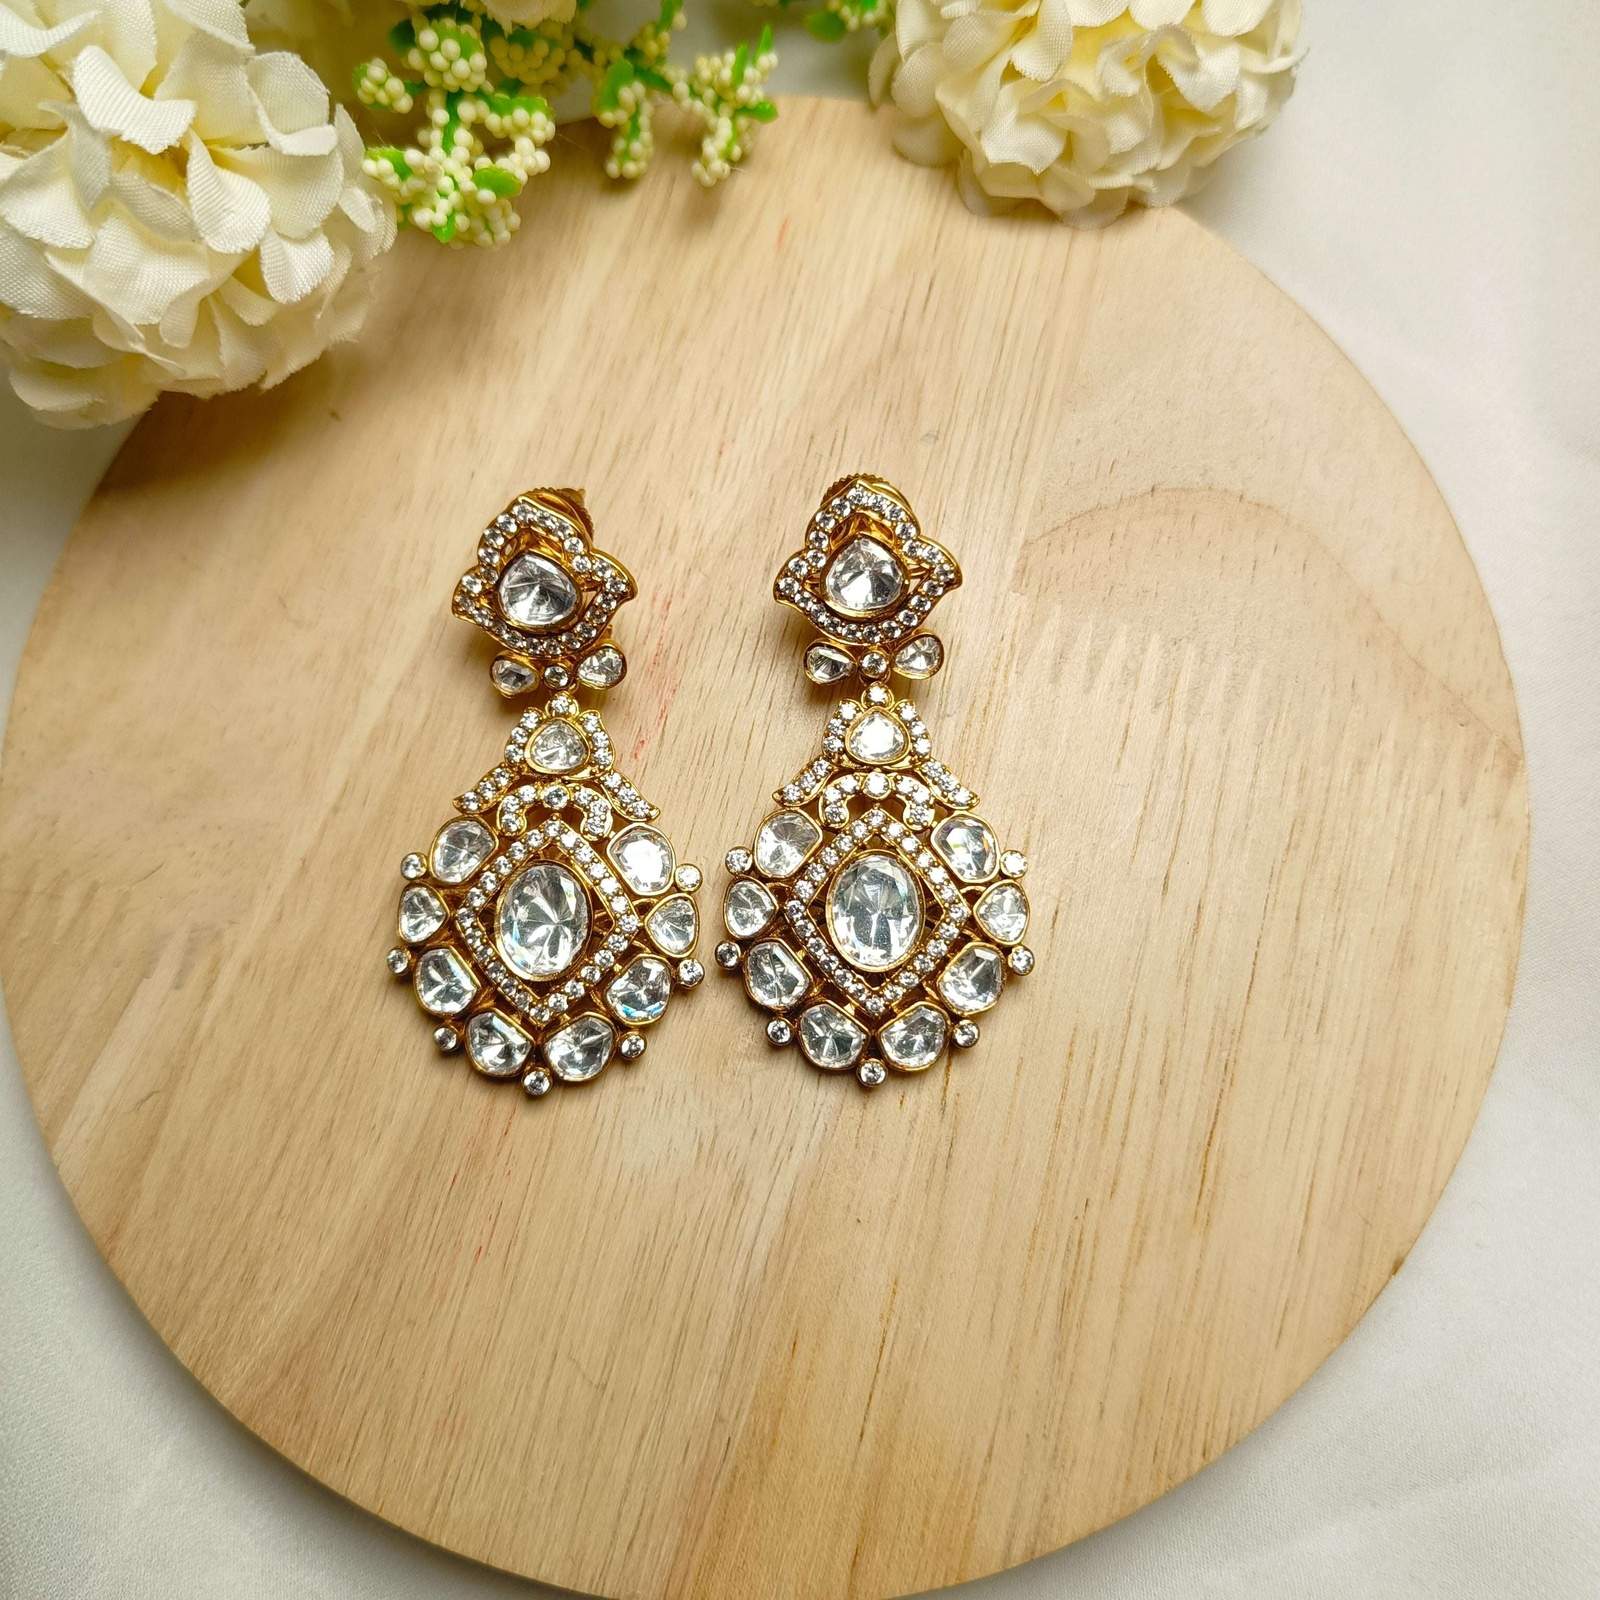 Nayaab Shraddha Polki earrings